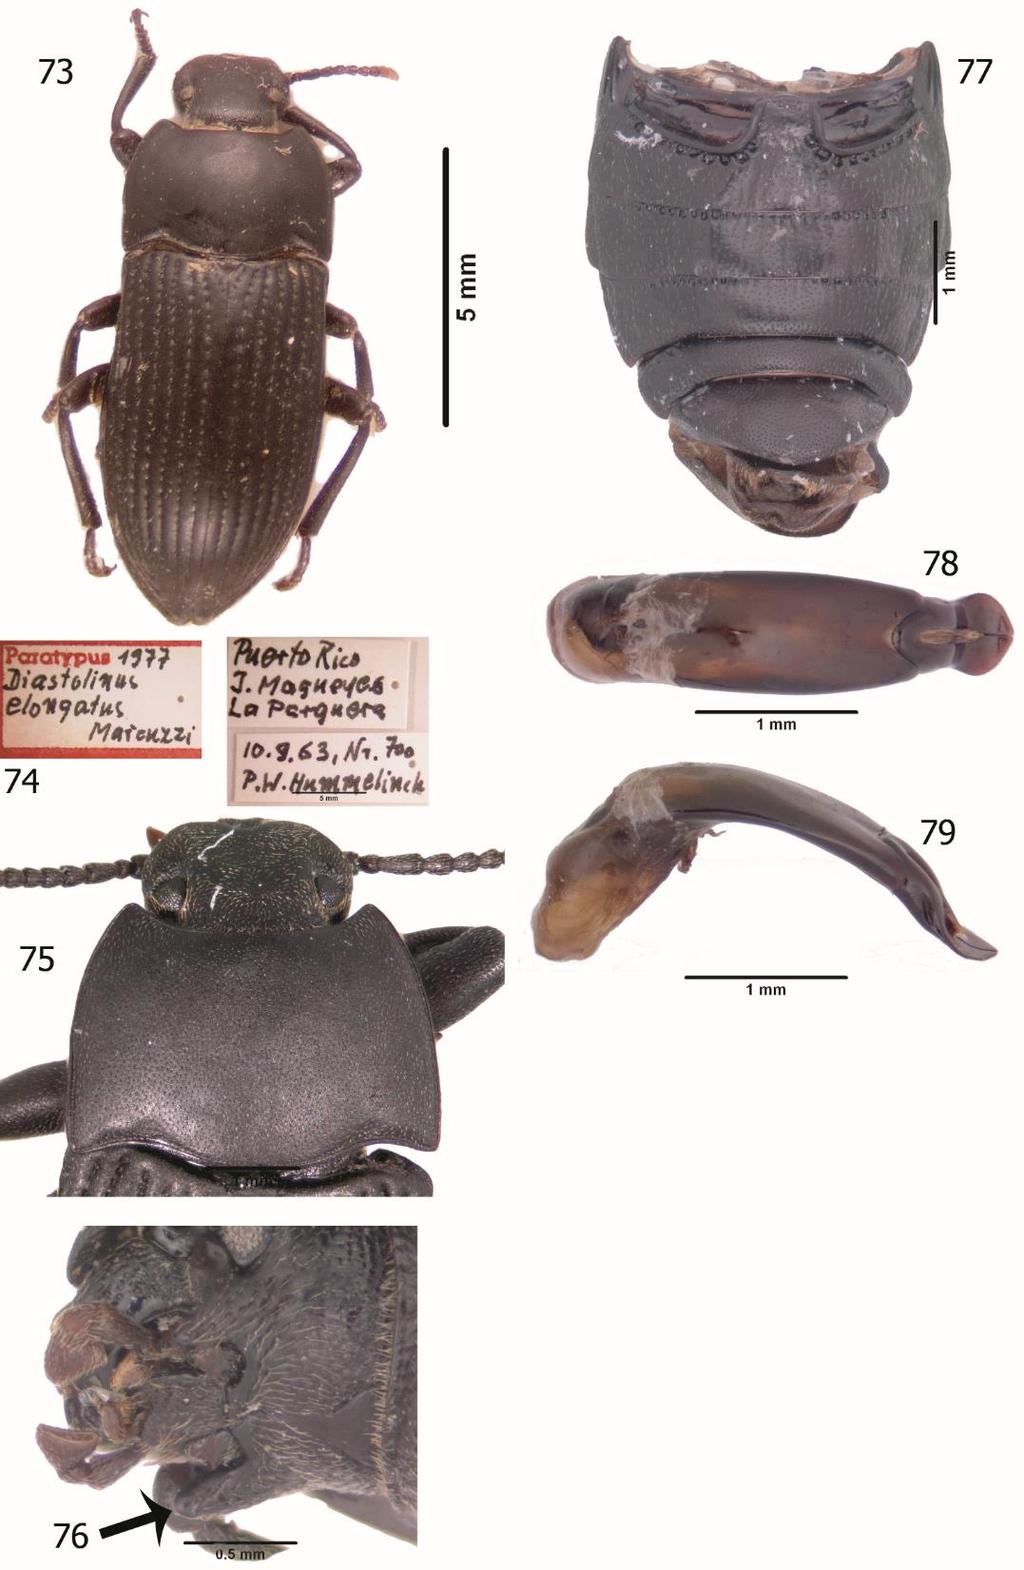 132 Figures 73-79. Diastoinus victori. 73. D. victori Paratype, dorsal habitus. 74. D. victori Paratype, labels. 75. D. victori pronotum.